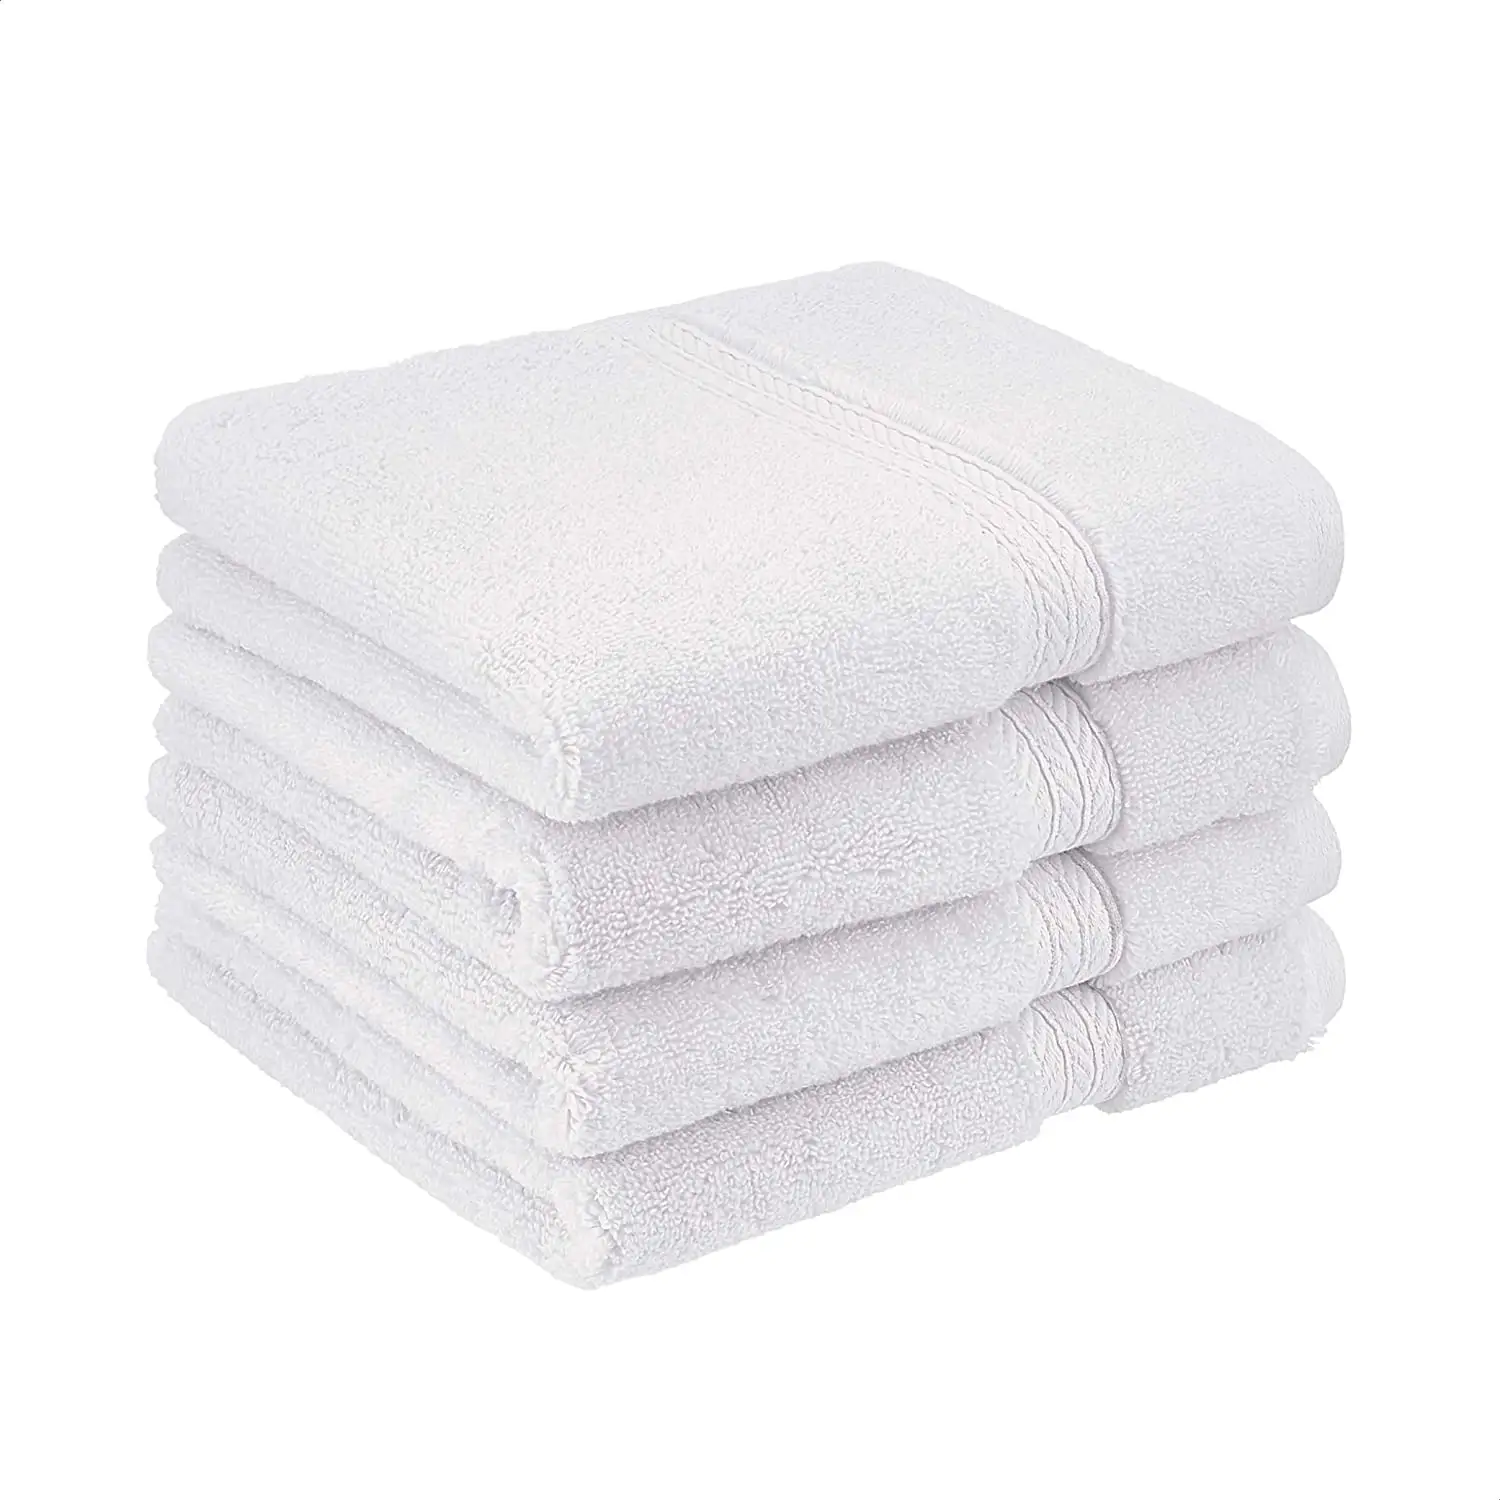 Оптовая продажа, 5 звезд, гостиничное качество, полотенца для лица, 100 хлопок, белое полотенце для рук